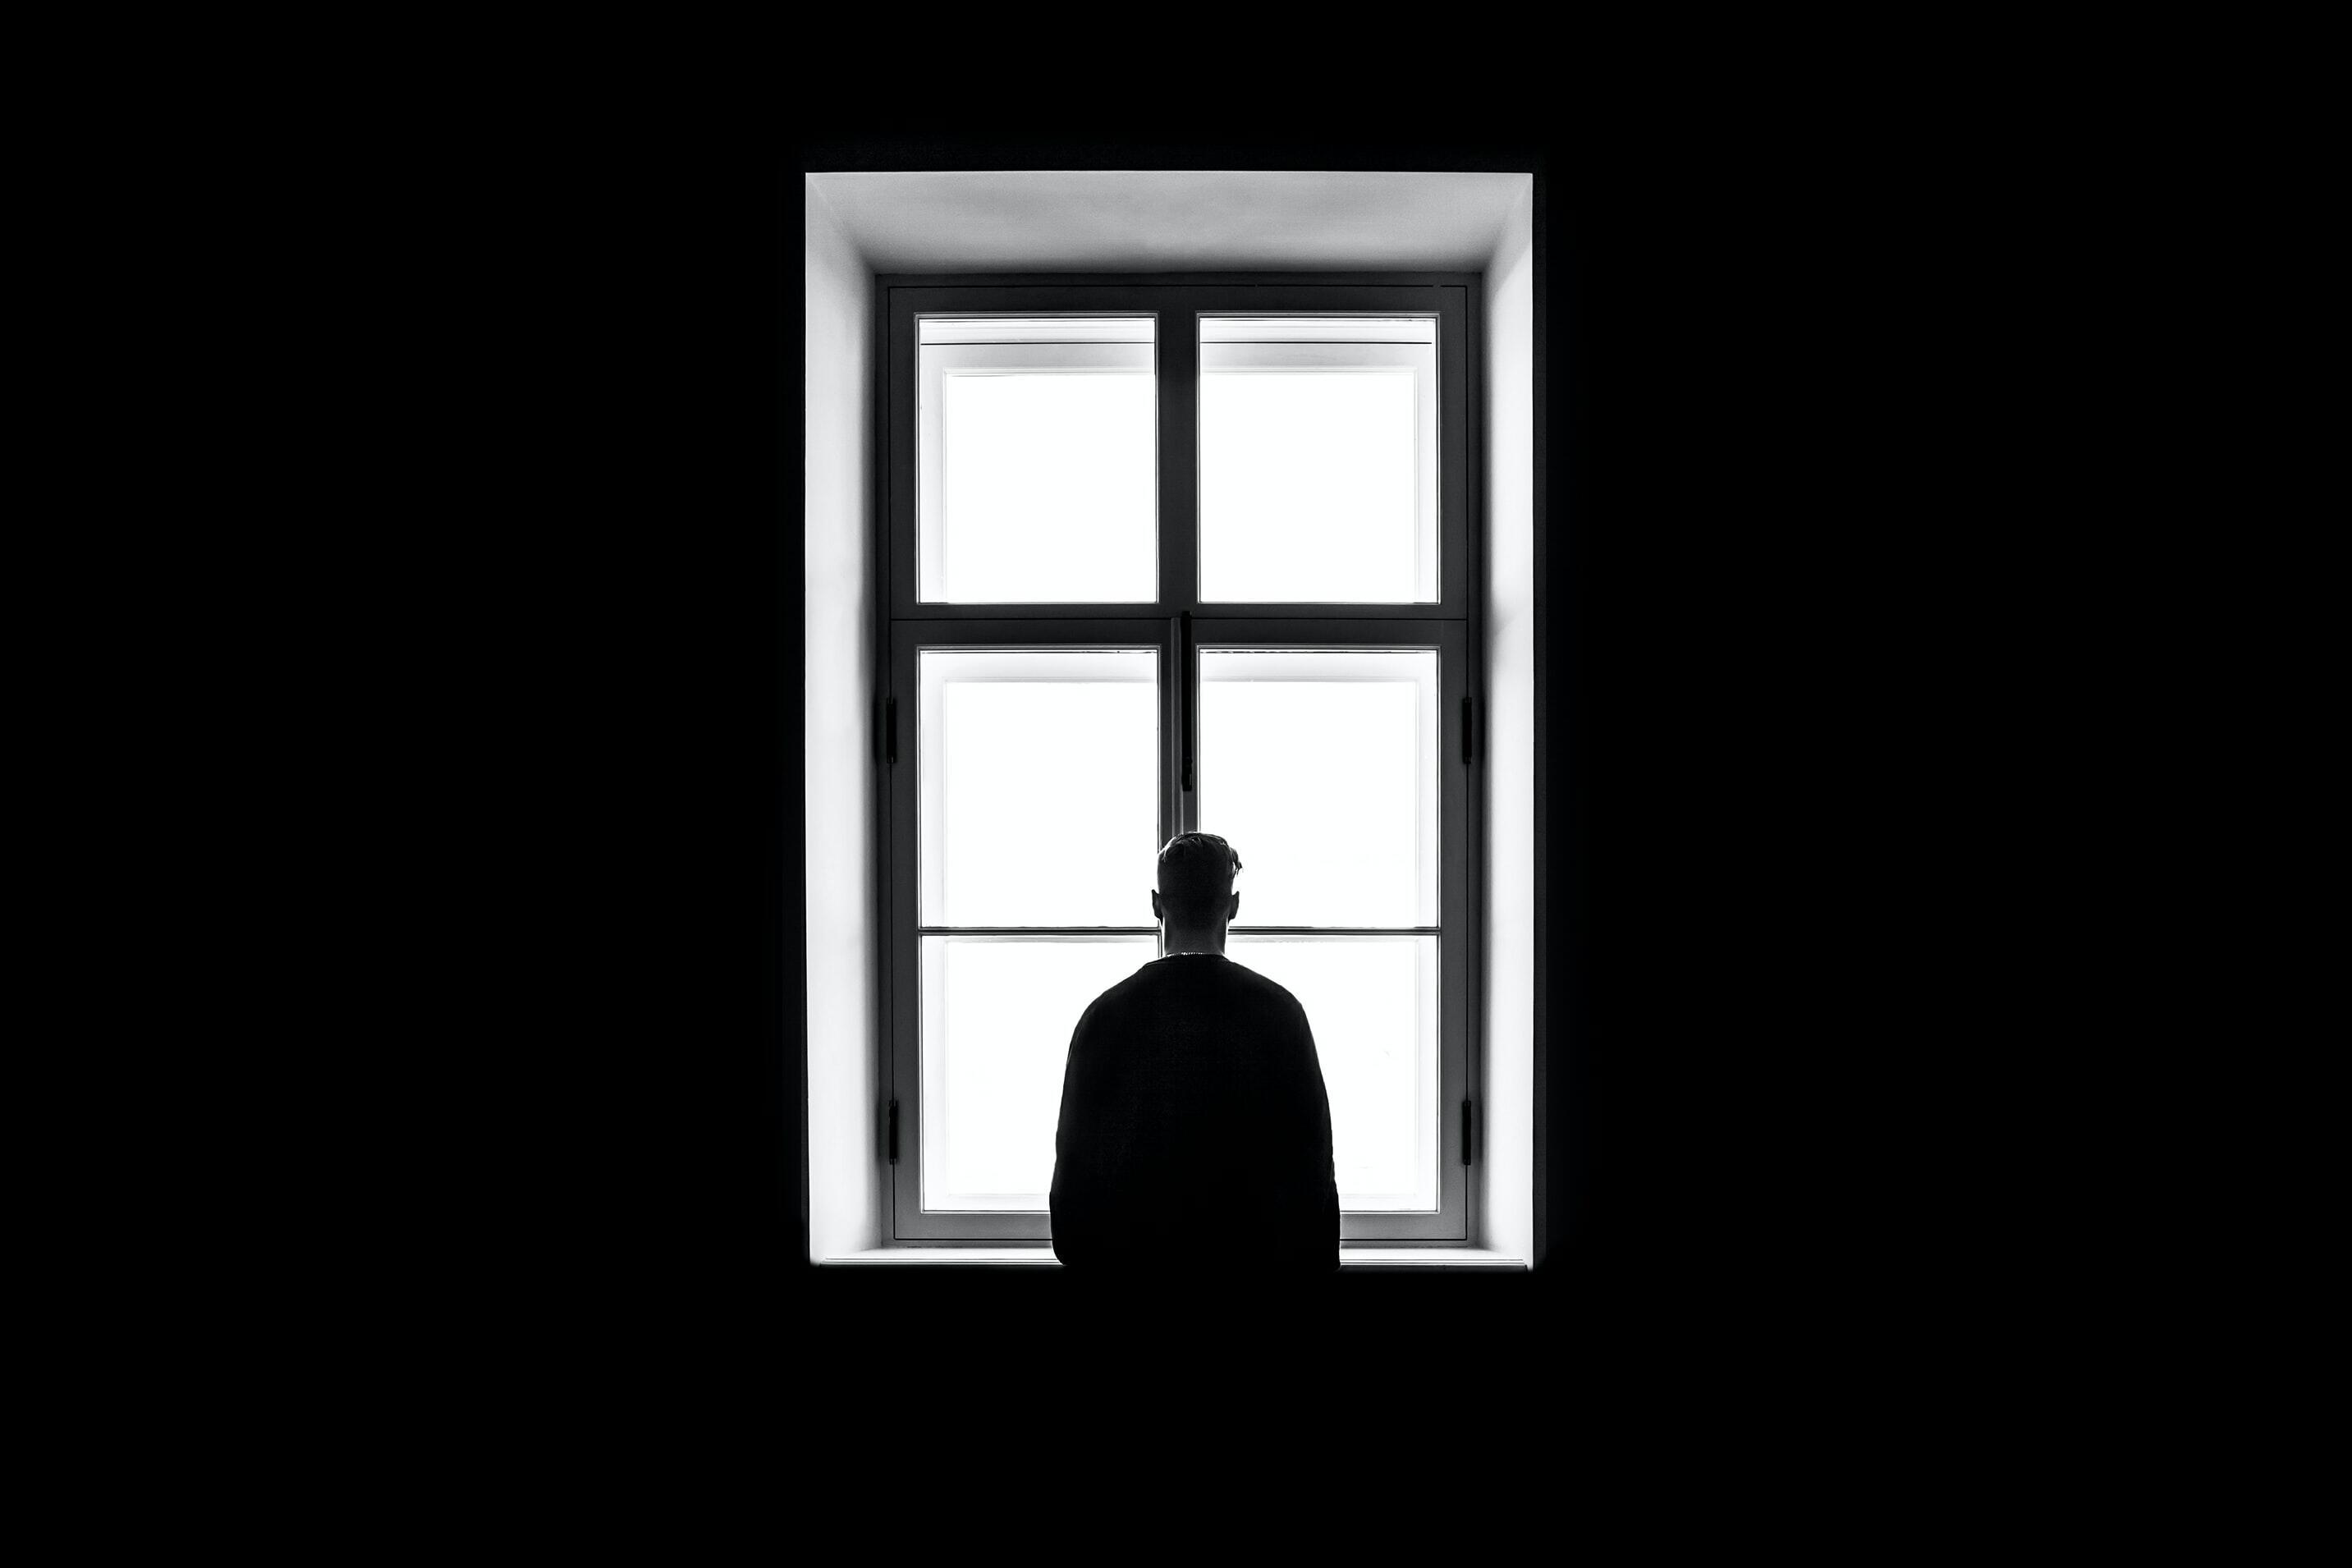 Imatge persona mirant a través d'una finestra